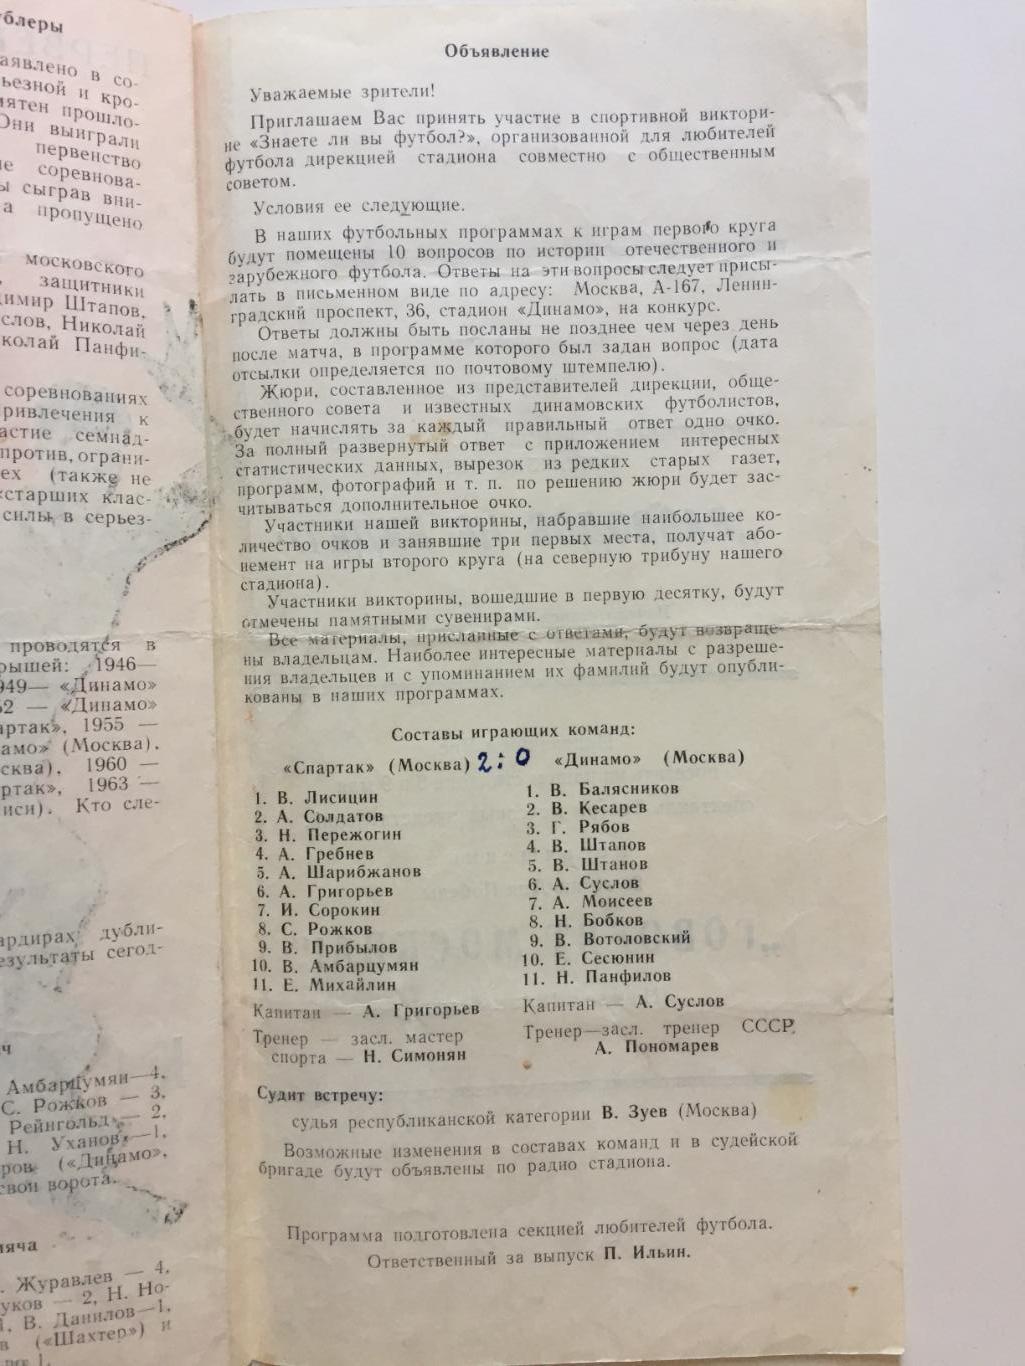 Спартак Москва - Динамо Москва 02.05.1965 дубль,дублирующие составы 2